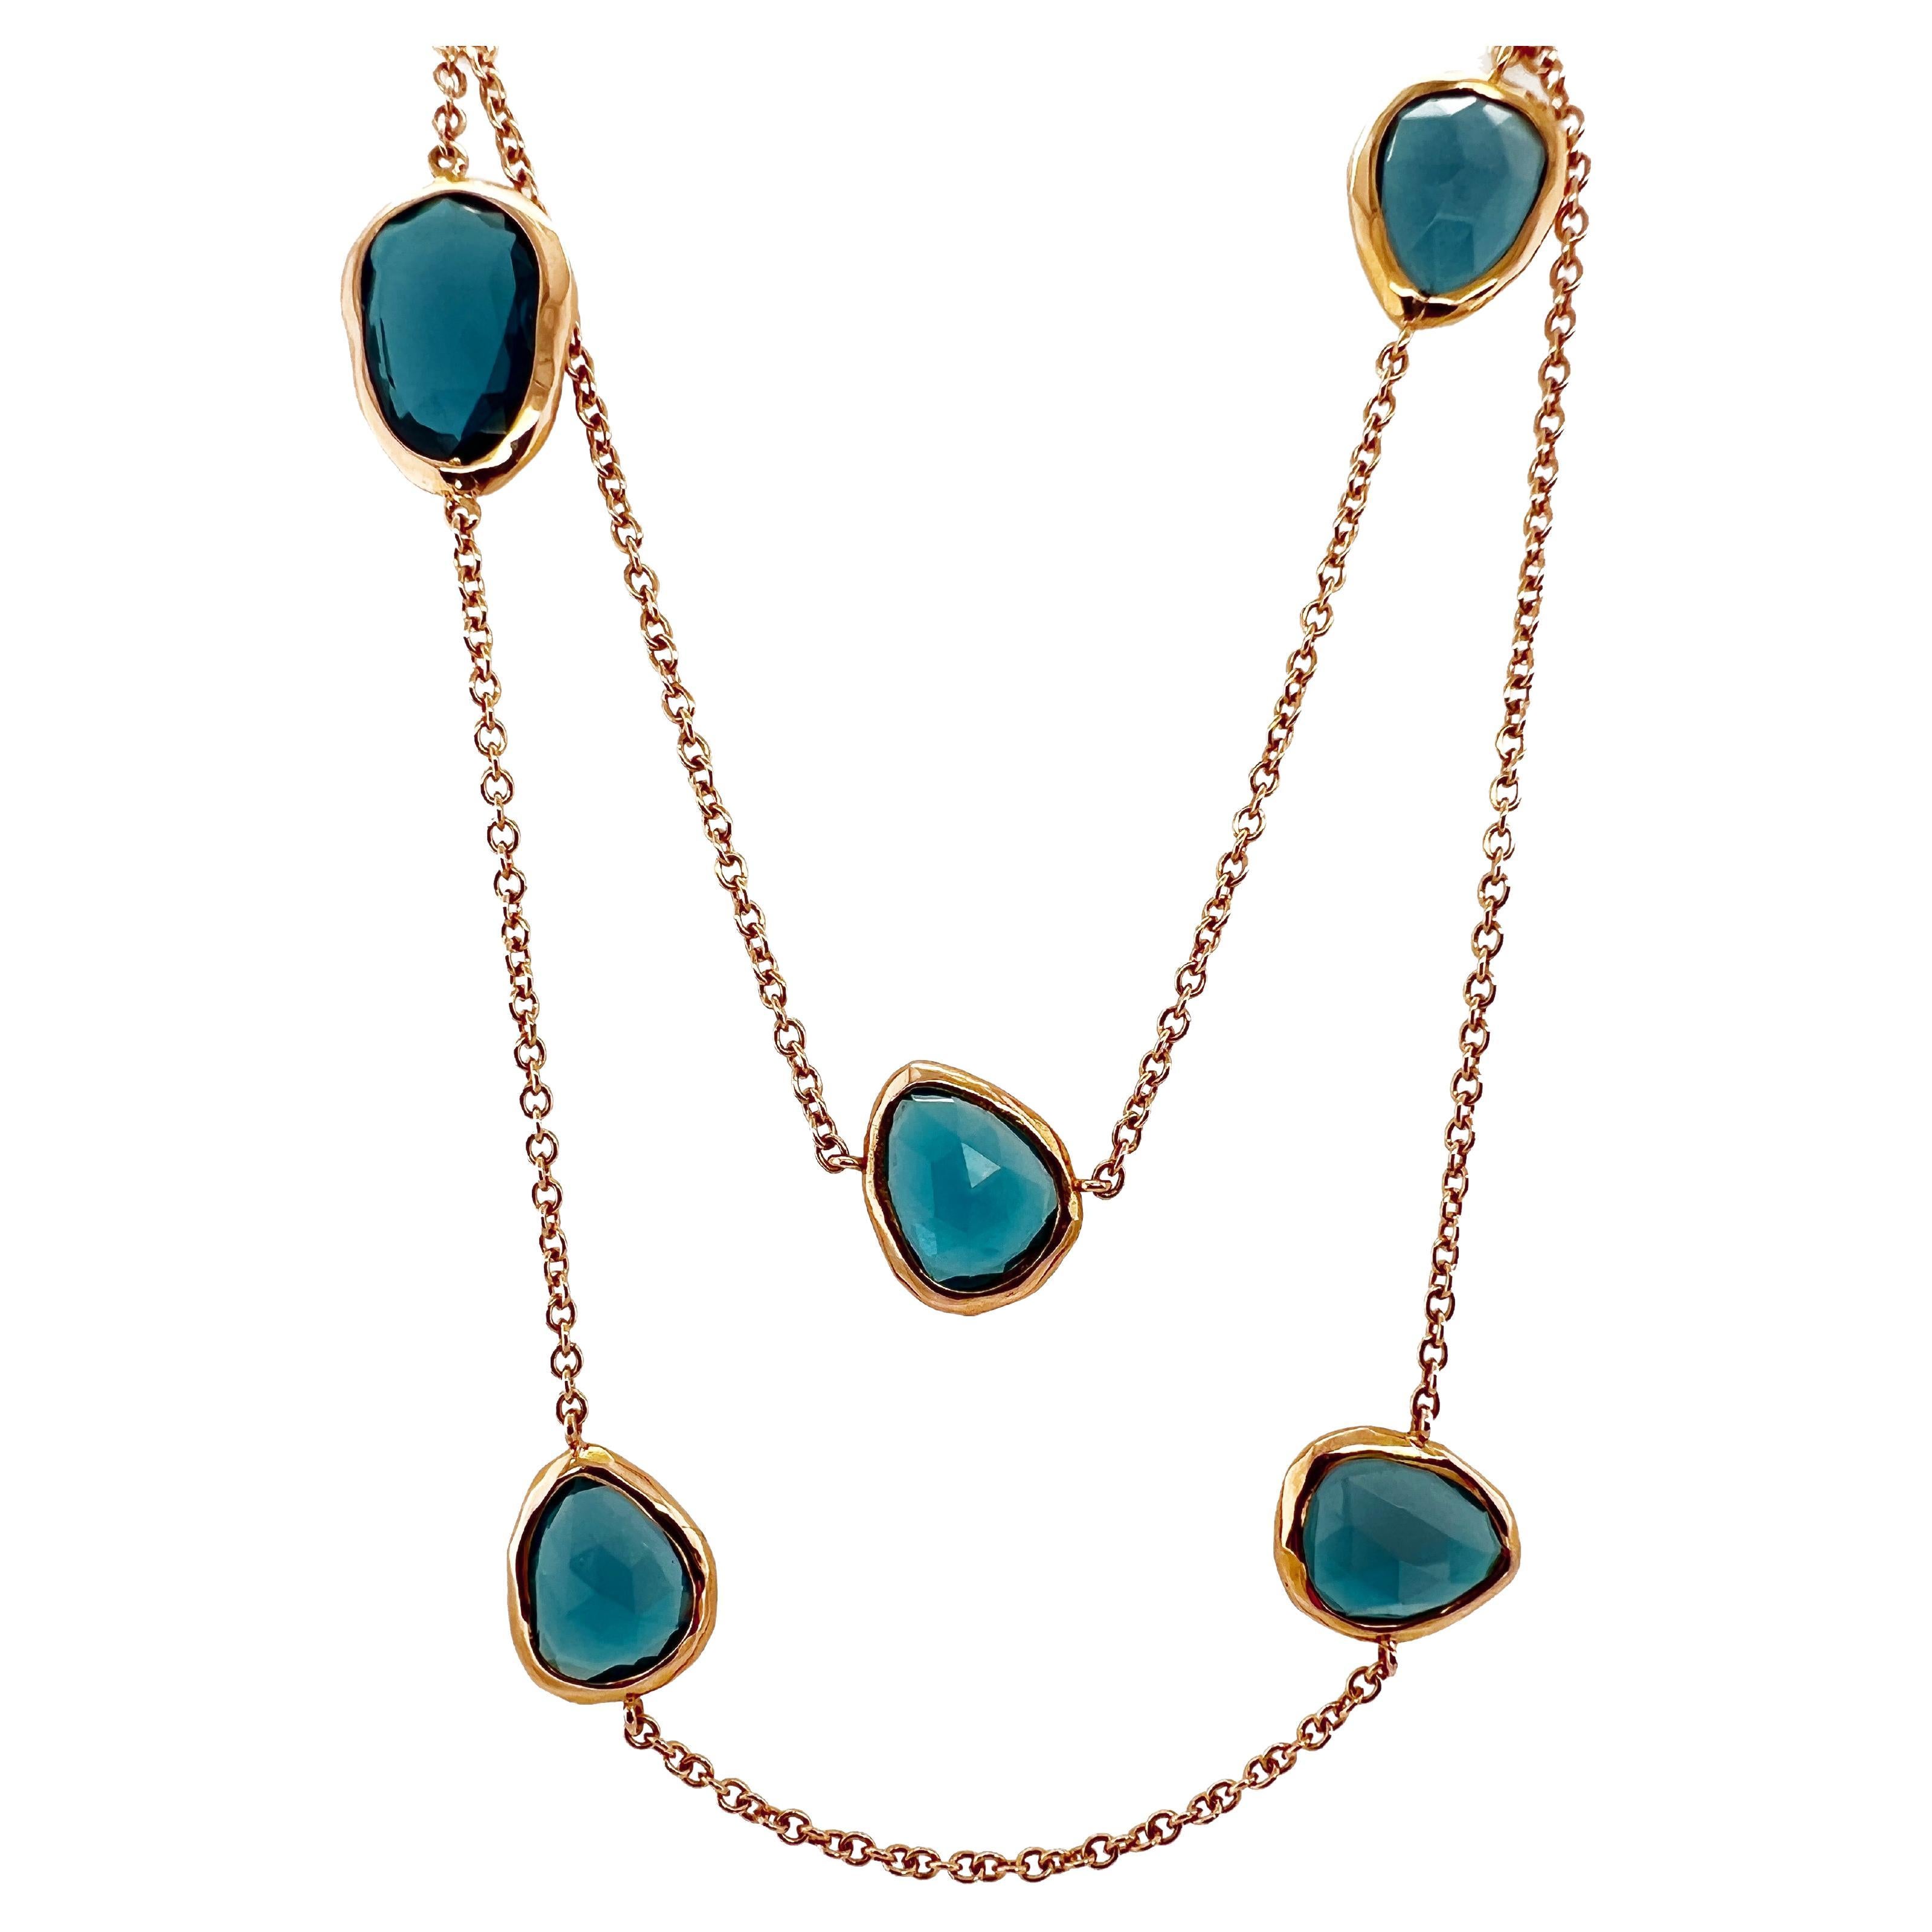 Collier en or rose 18kt, chaîne de style Chanel avec pierres précieuses Topaze bleues